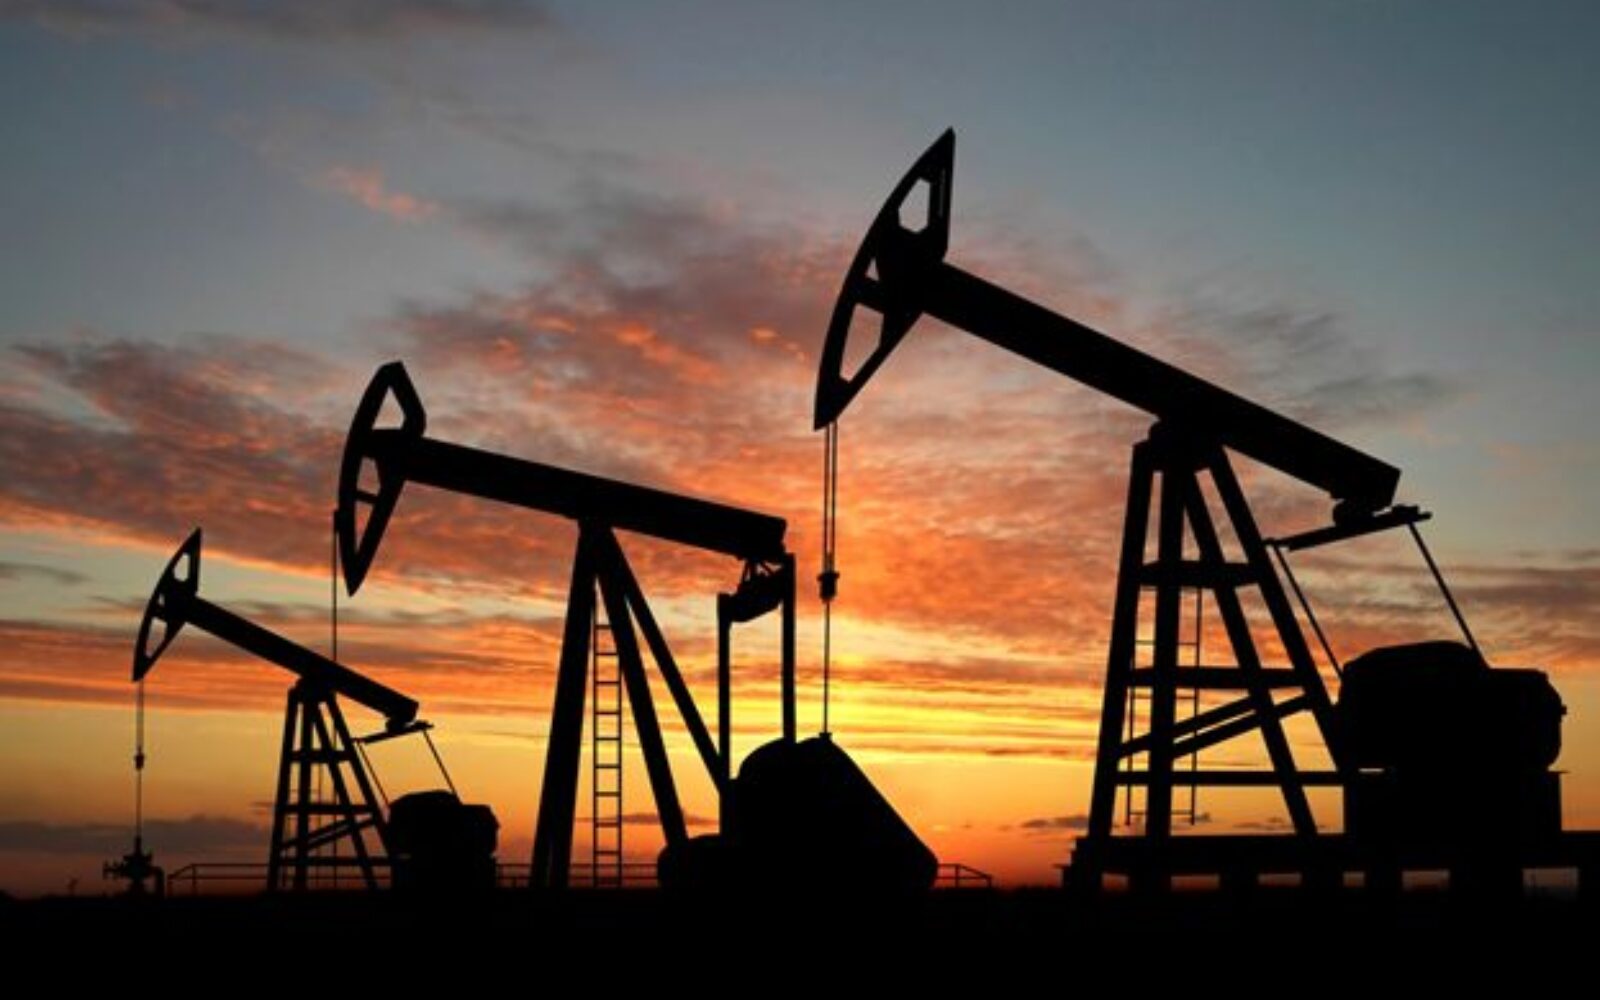 Rekordno niska cijena nafte: Tko od koga profitira, a tko gubi? - Poslovni dnevnik